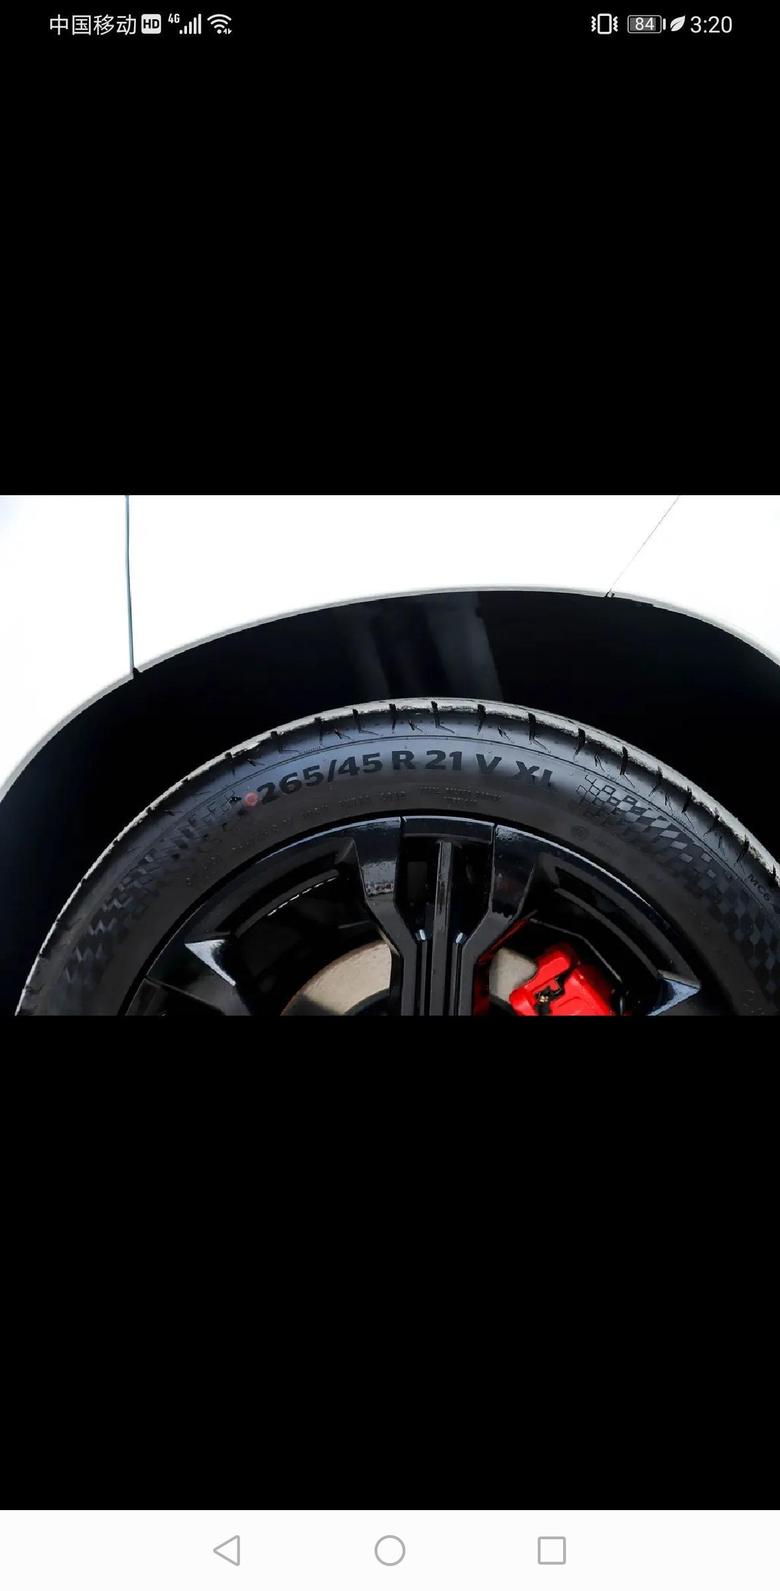 魏牌 vv7 GT这个型号的轮胎是不是胎噪声很大